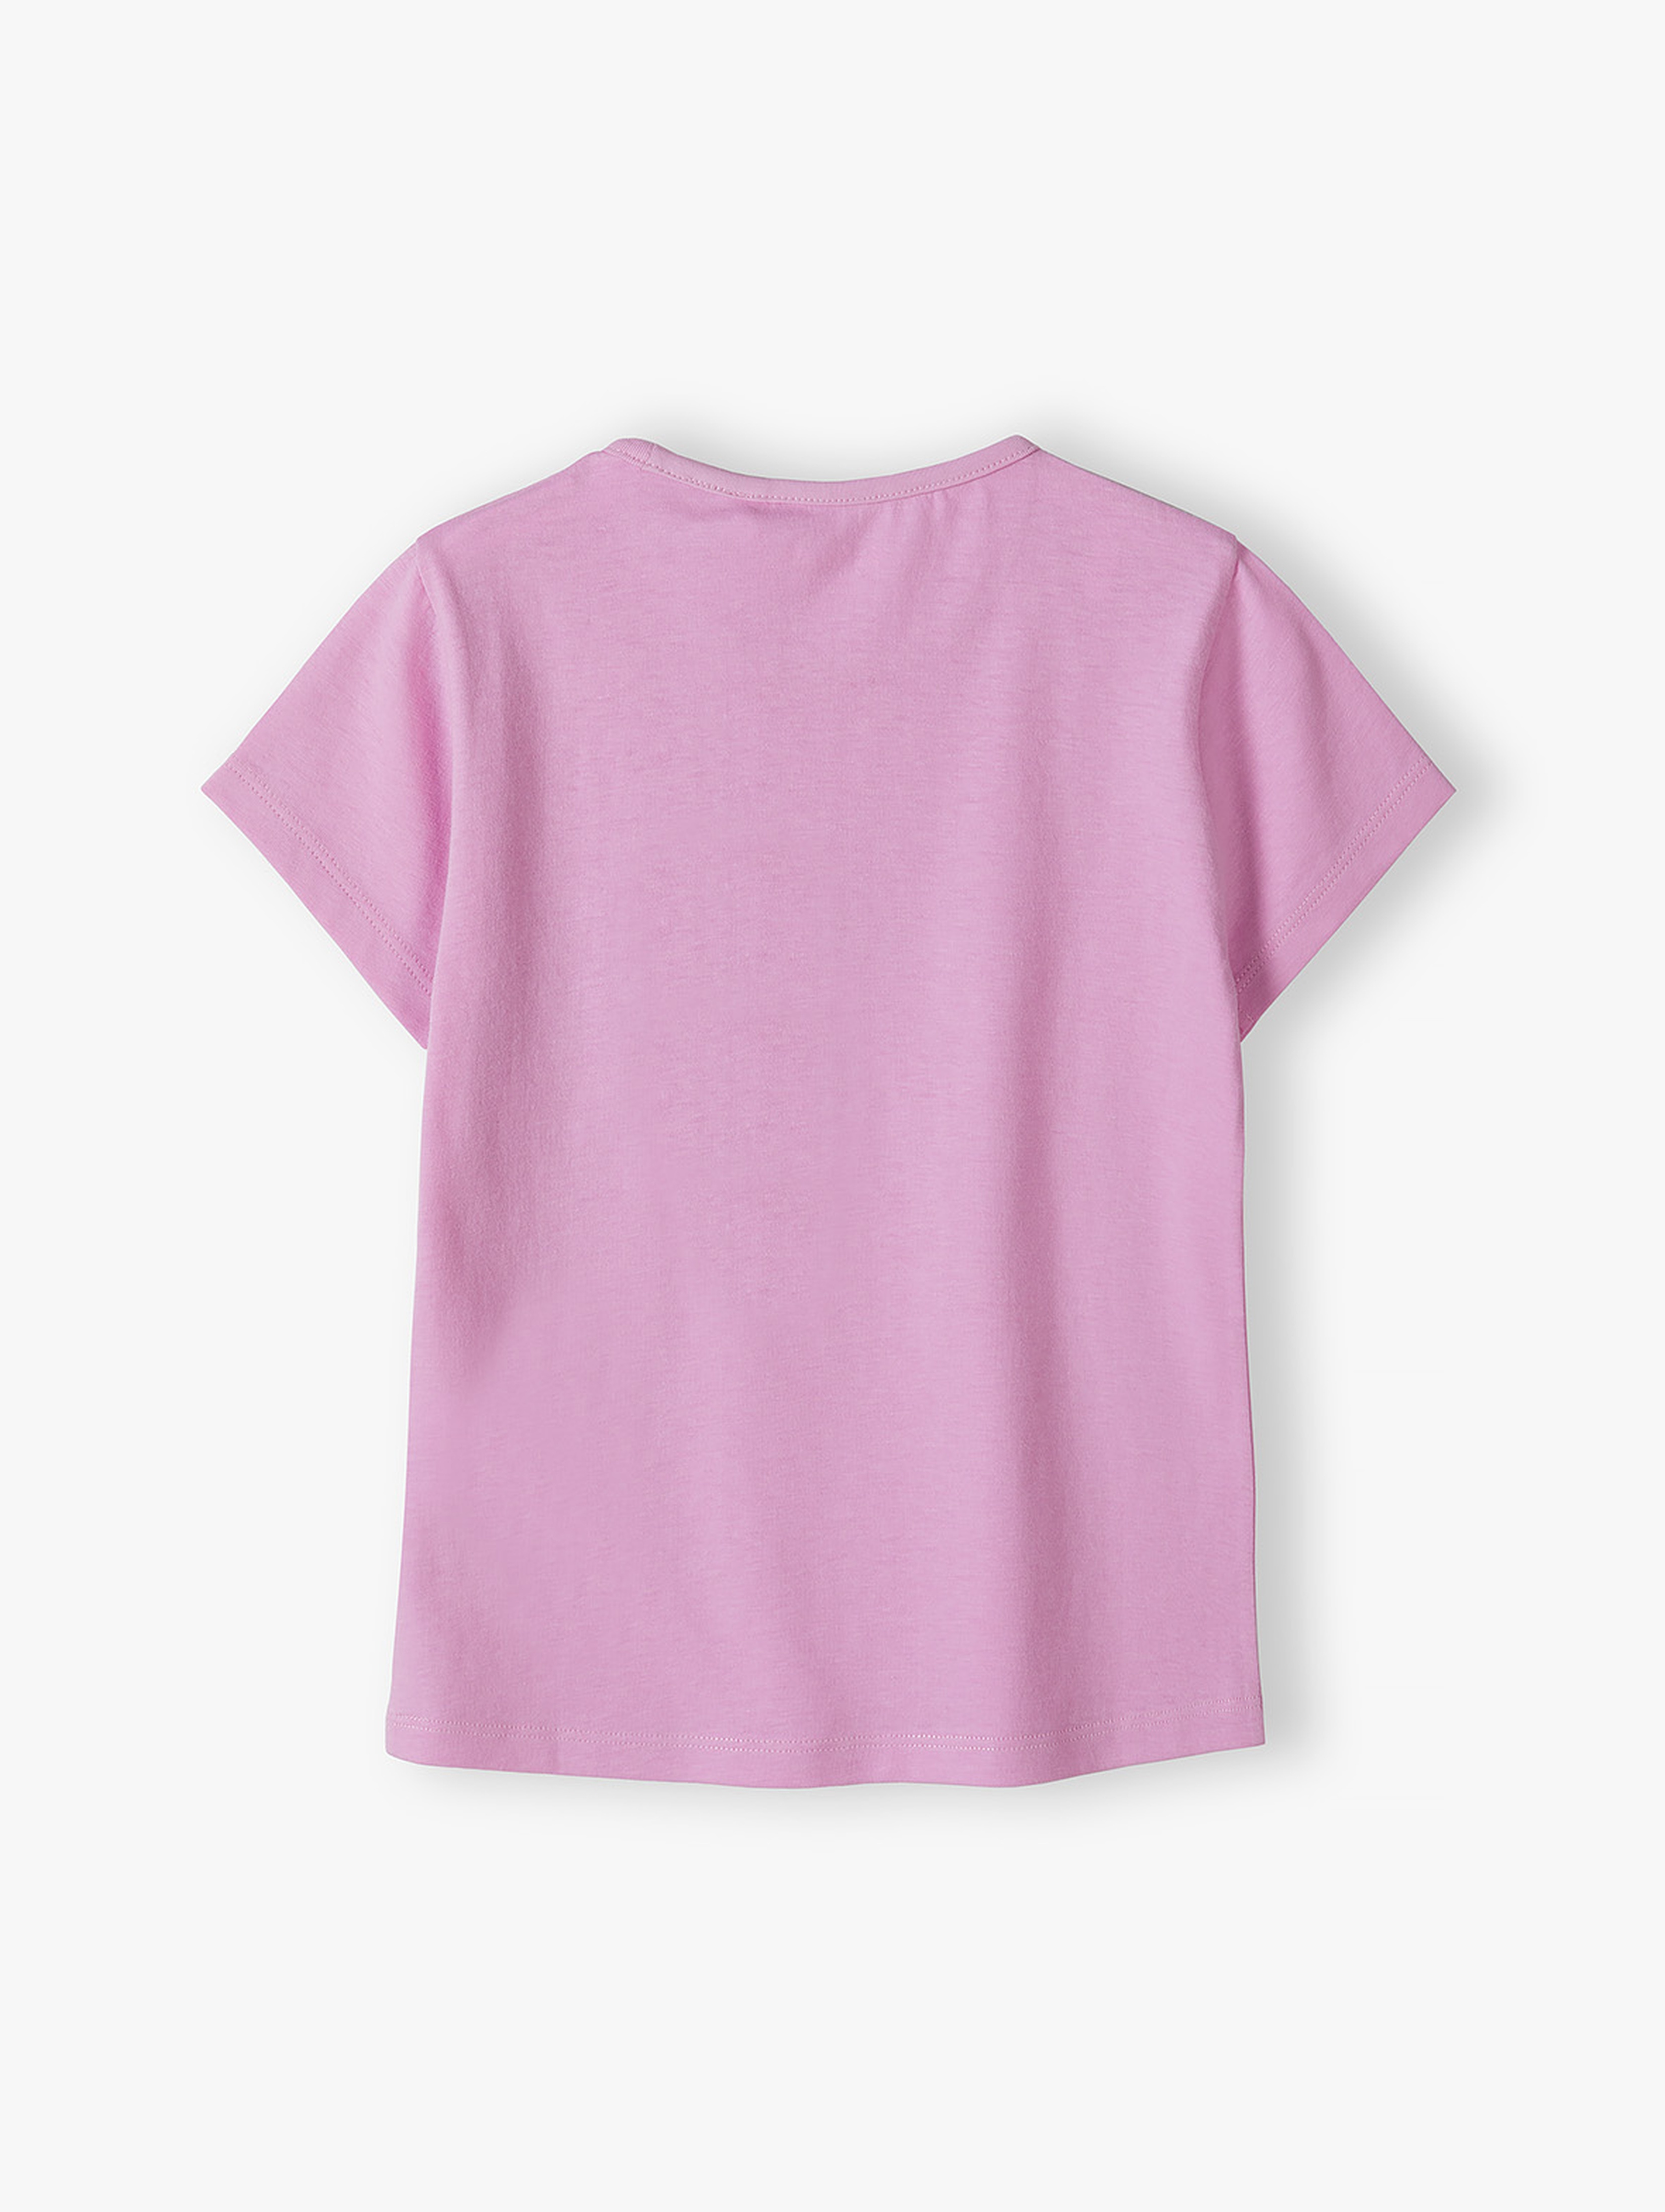 Różowy t-shirt dziewczęcy z kwiatkiem - 5.10.15.